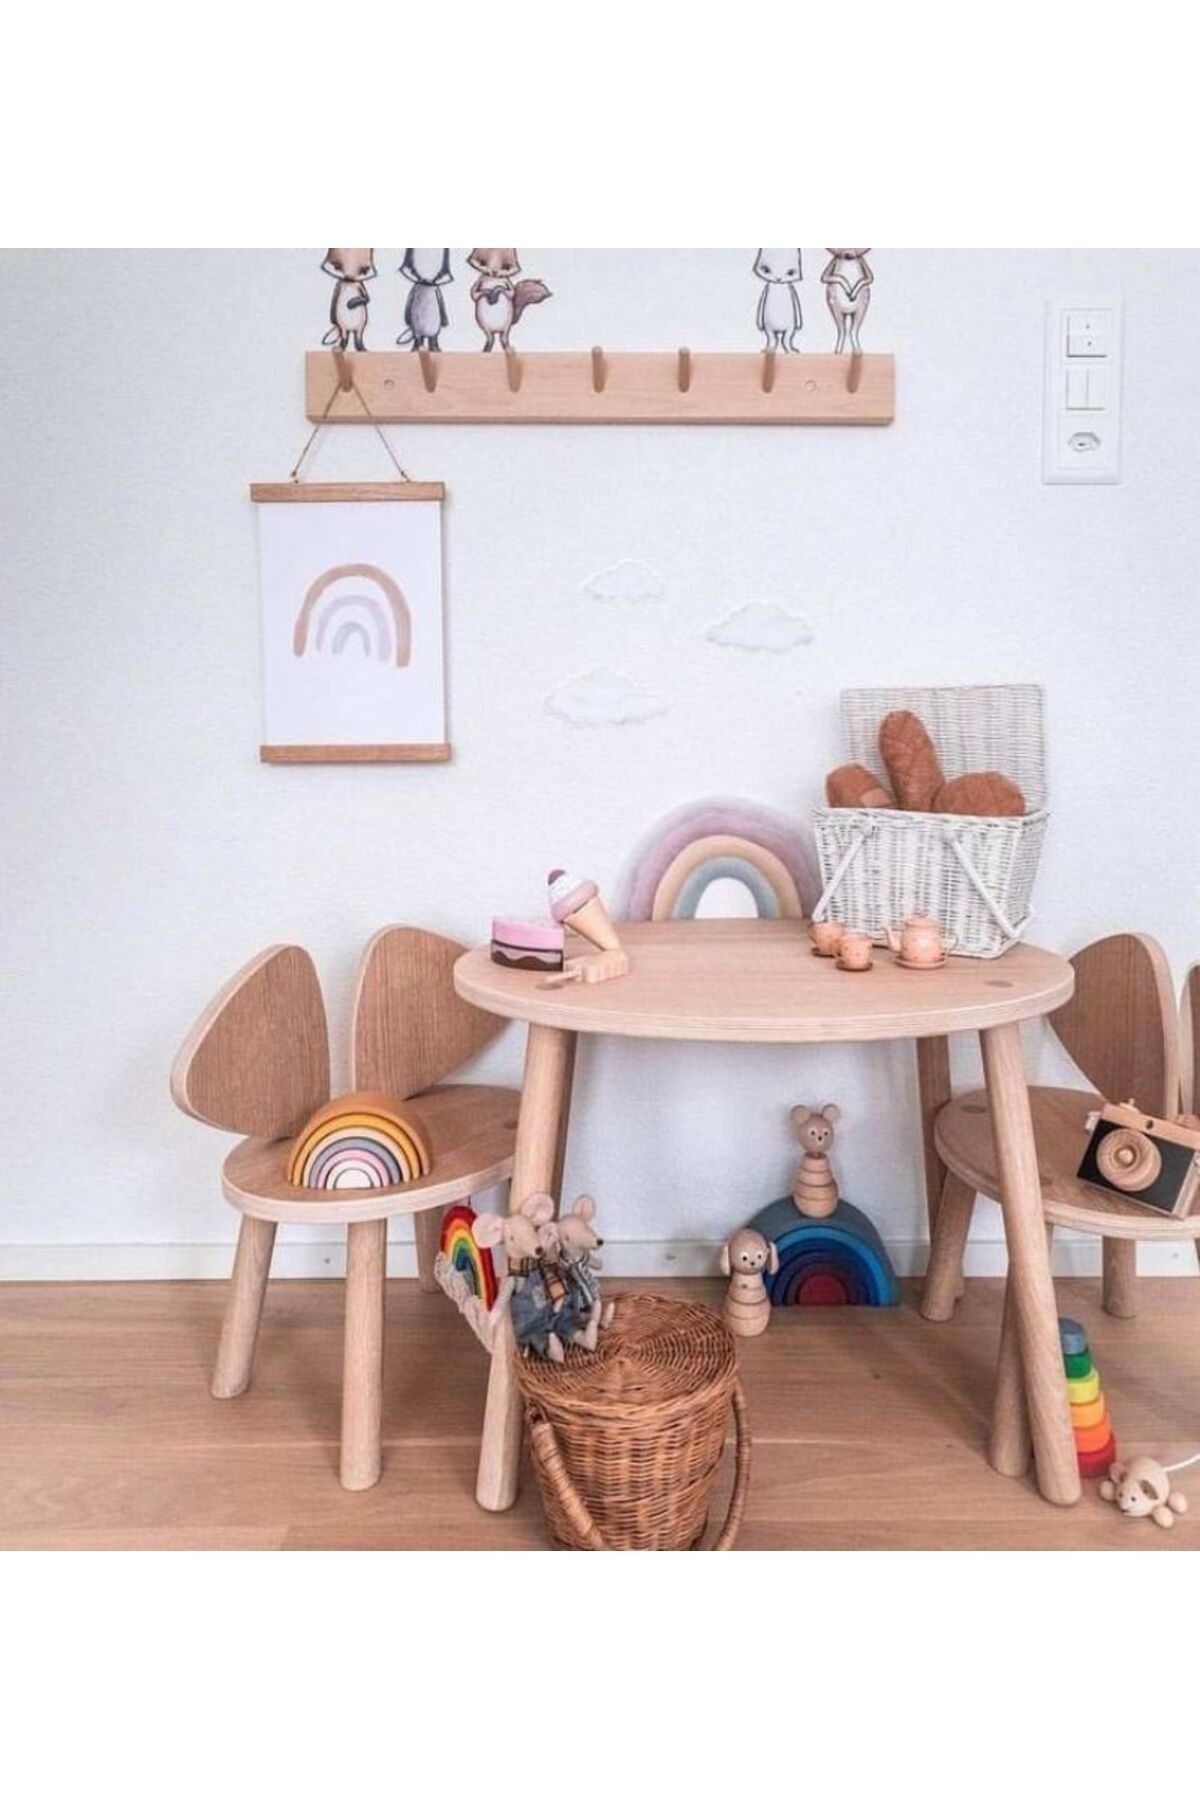 Ahsel Ahşap Mickey Sandalye Set, Mdf Montessori çocuk odası masa ve sandalye, oyun masası, çocuk aktivite masası